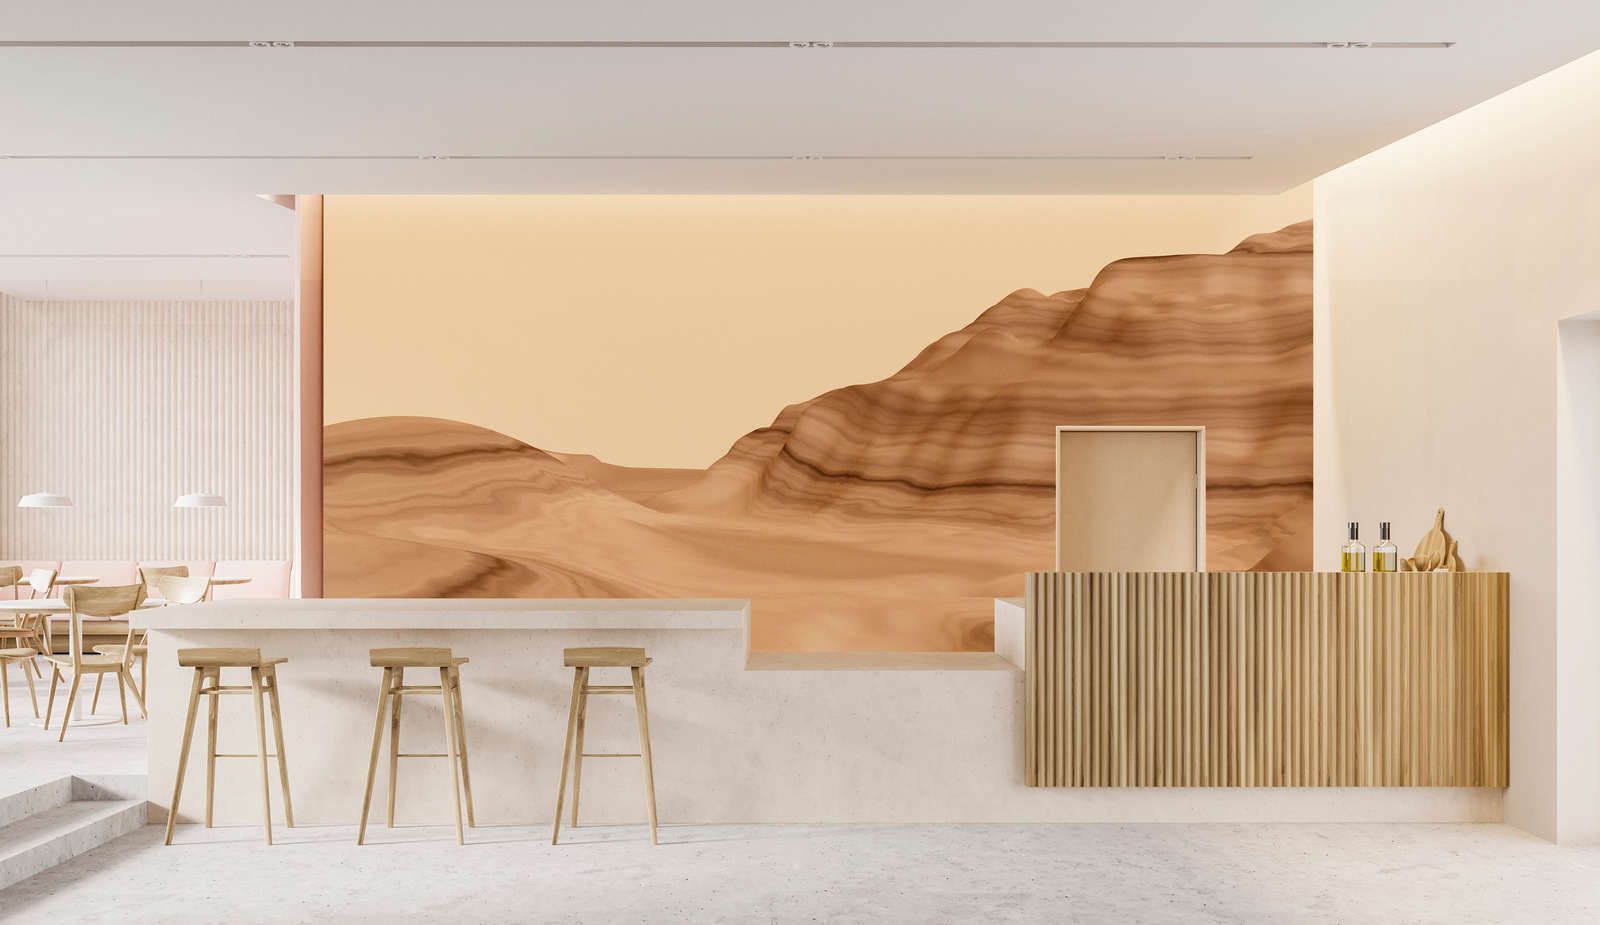             Digital behang »luke« - Abstract woestijnlandschap - Soepele, licht parelmoerachtige vliesstof
        